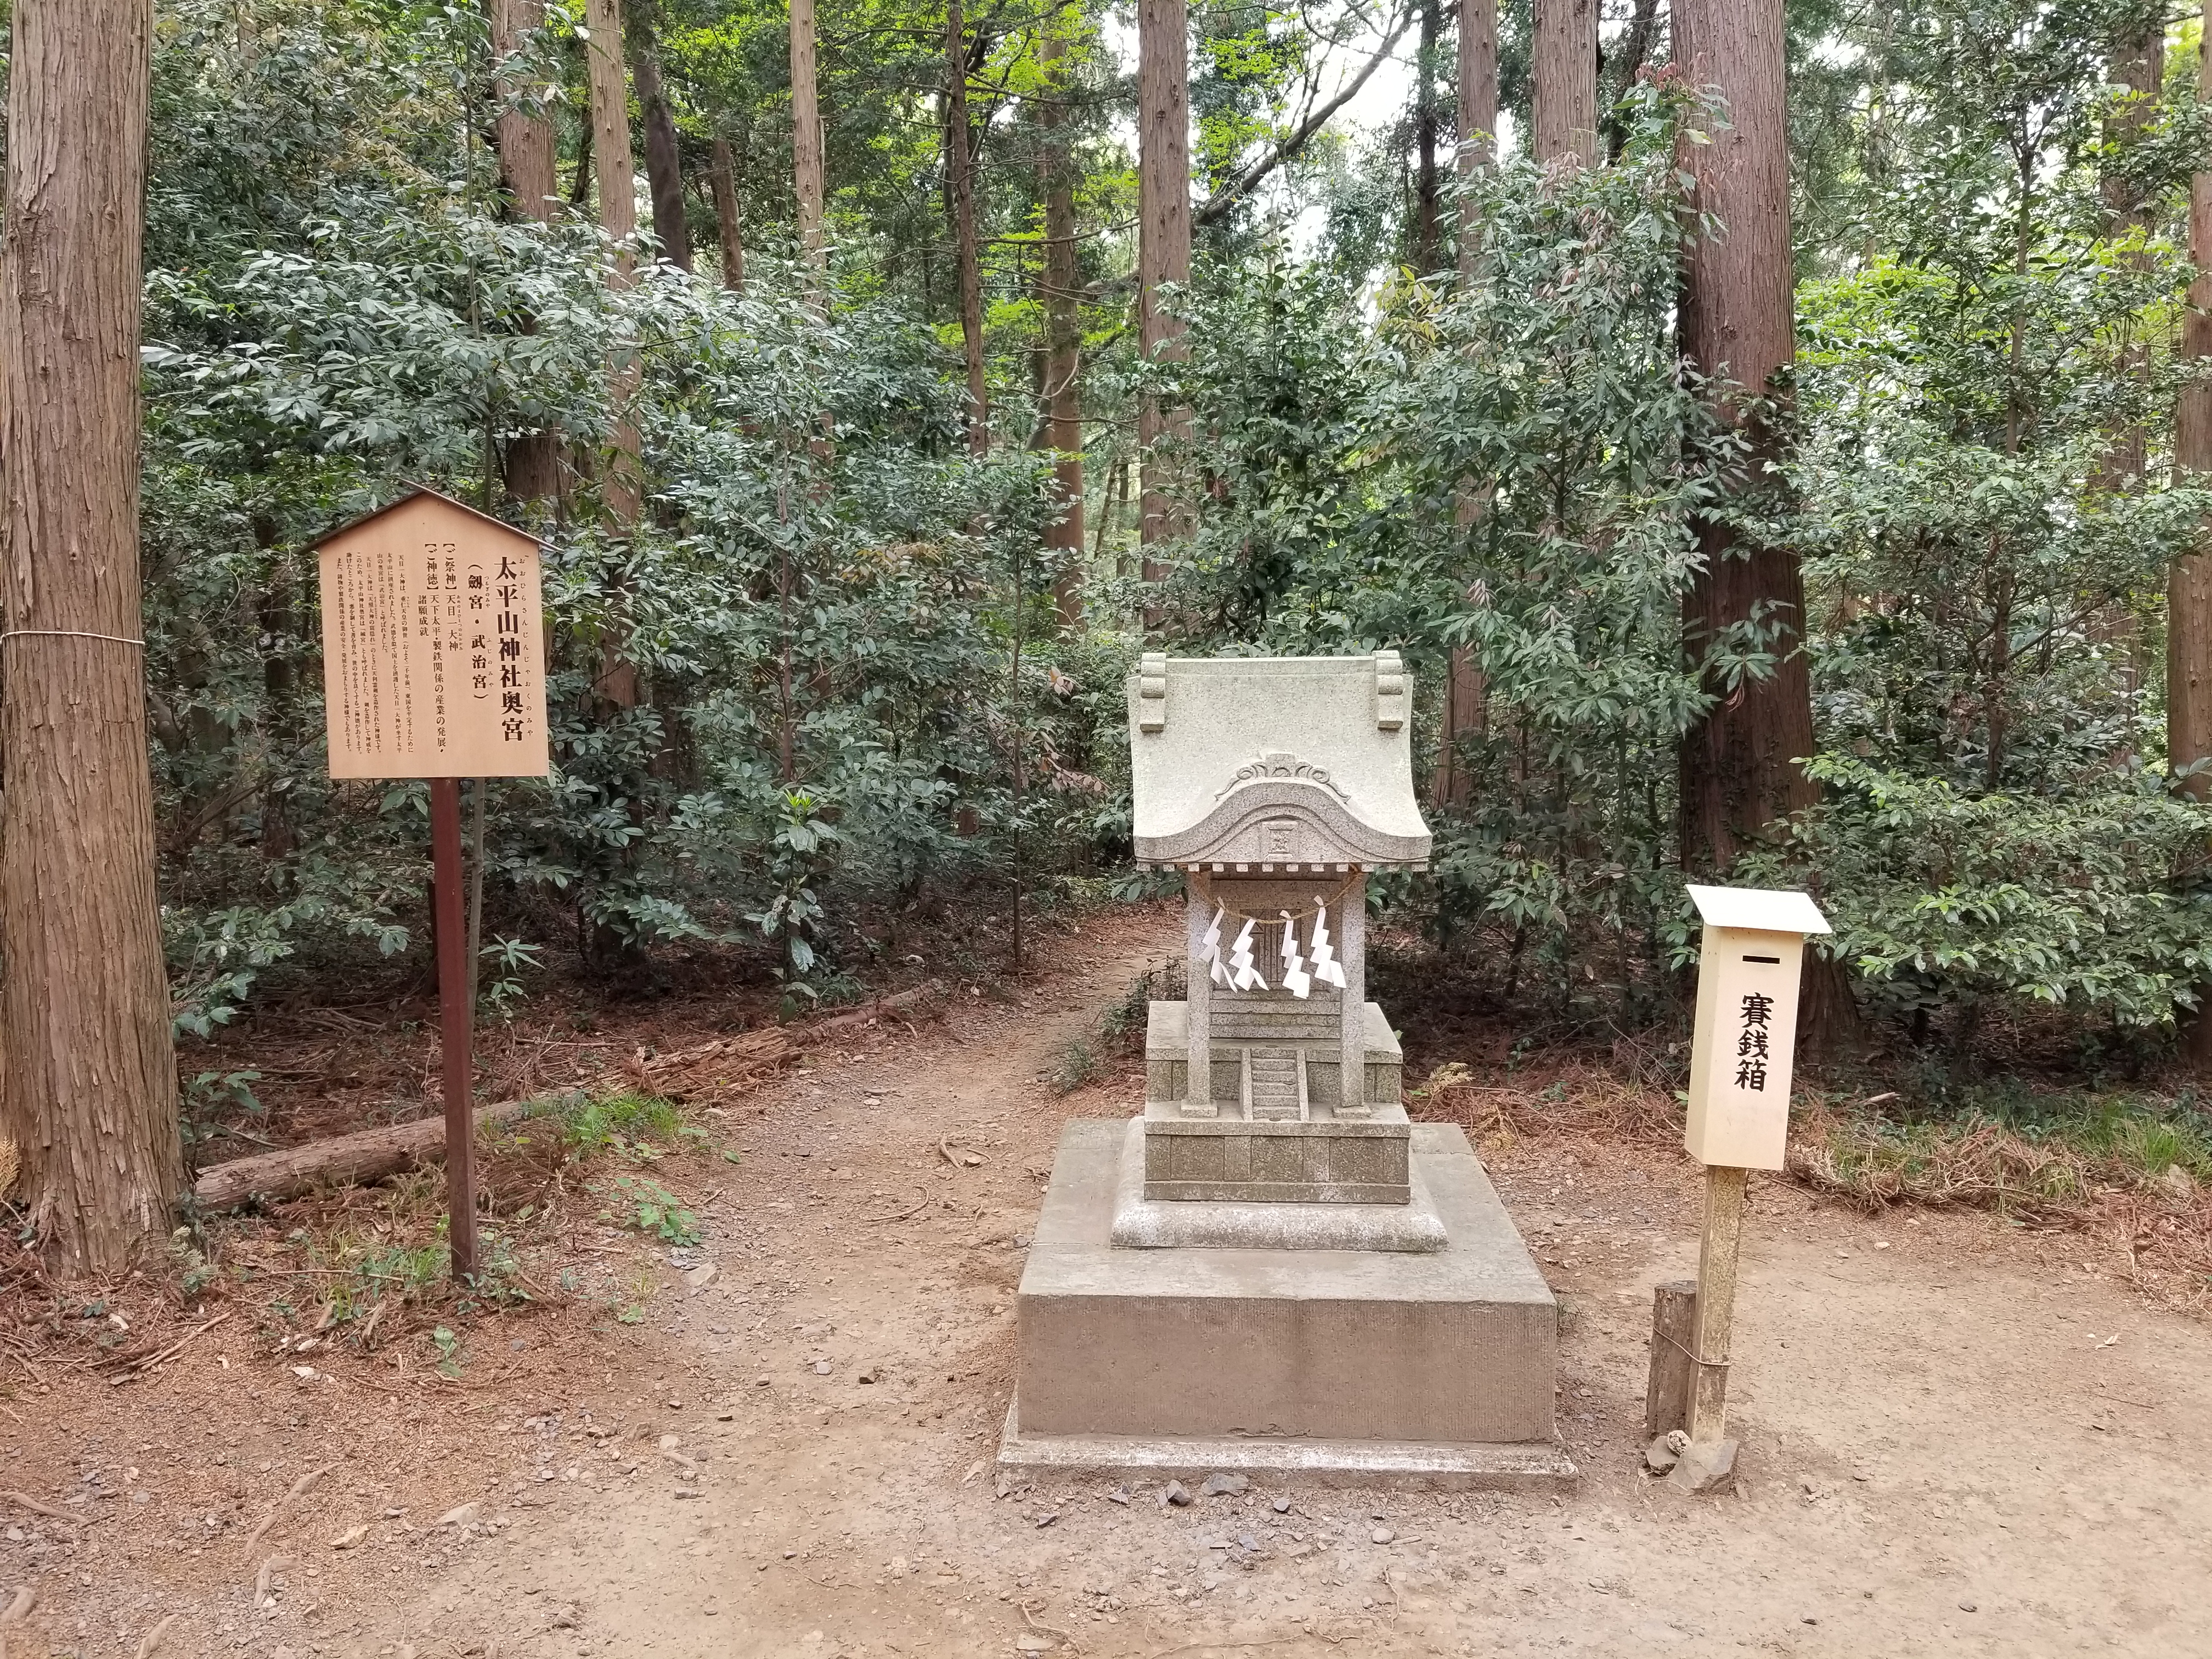 四季香る大平山神社と雨引観音バスツアーのおすすめポイント詳細